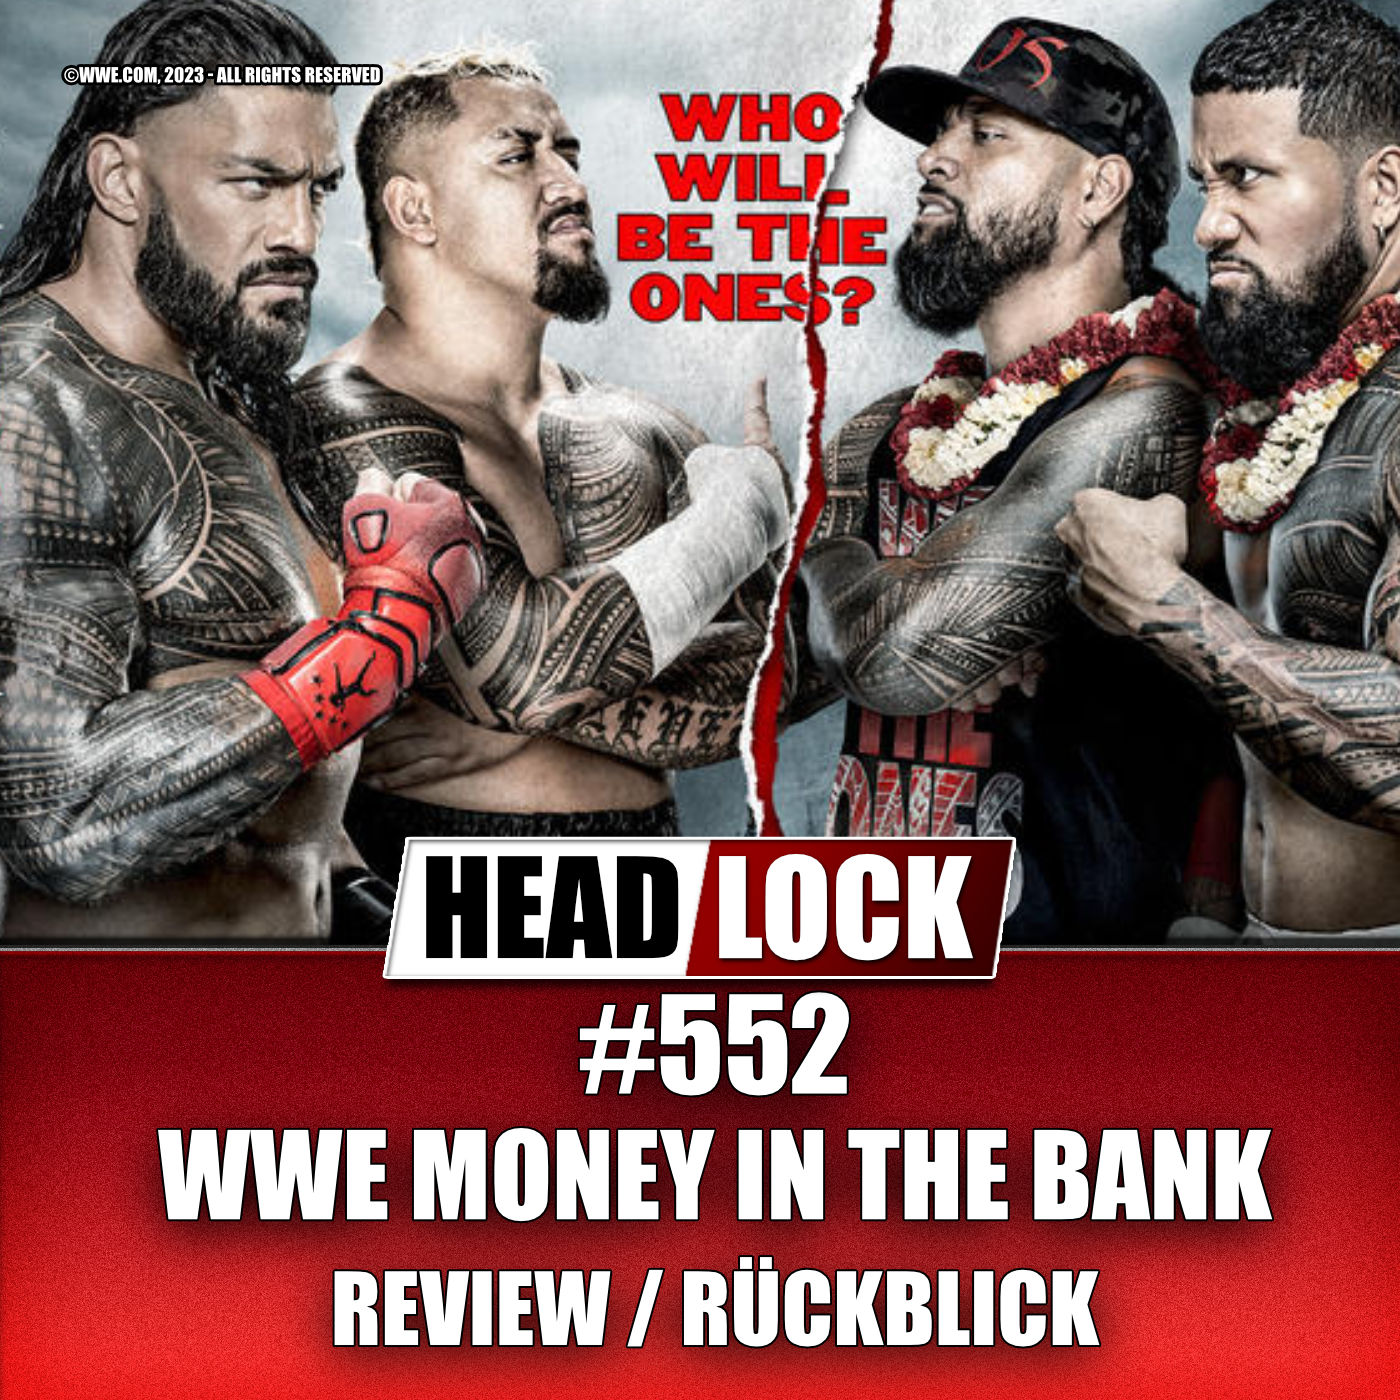 #552: WWE Money in the Bank 2023 (Review / Rückblick) - KAMPF UM DIE KOFFER UND DIE BLOODLINE IMPLODIERT!